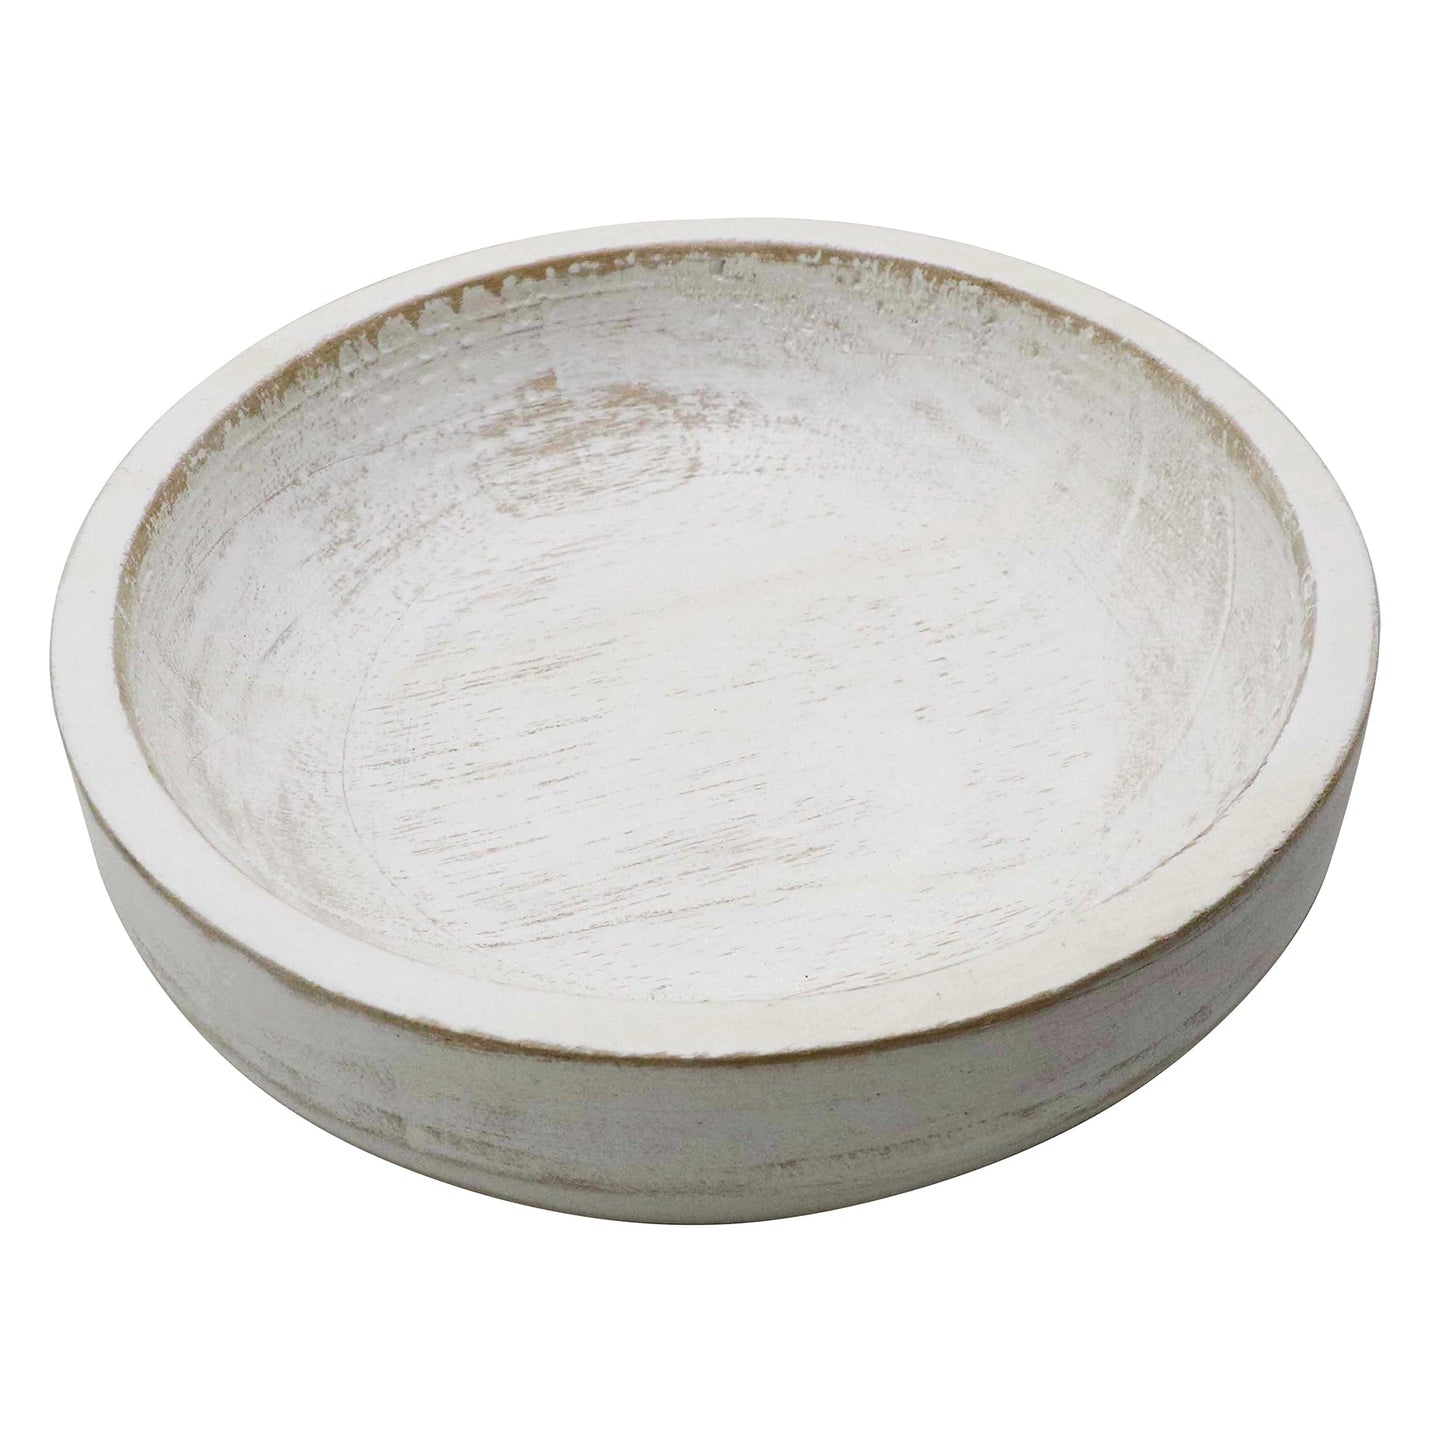 Decorative Wood Bowl - Whitewash